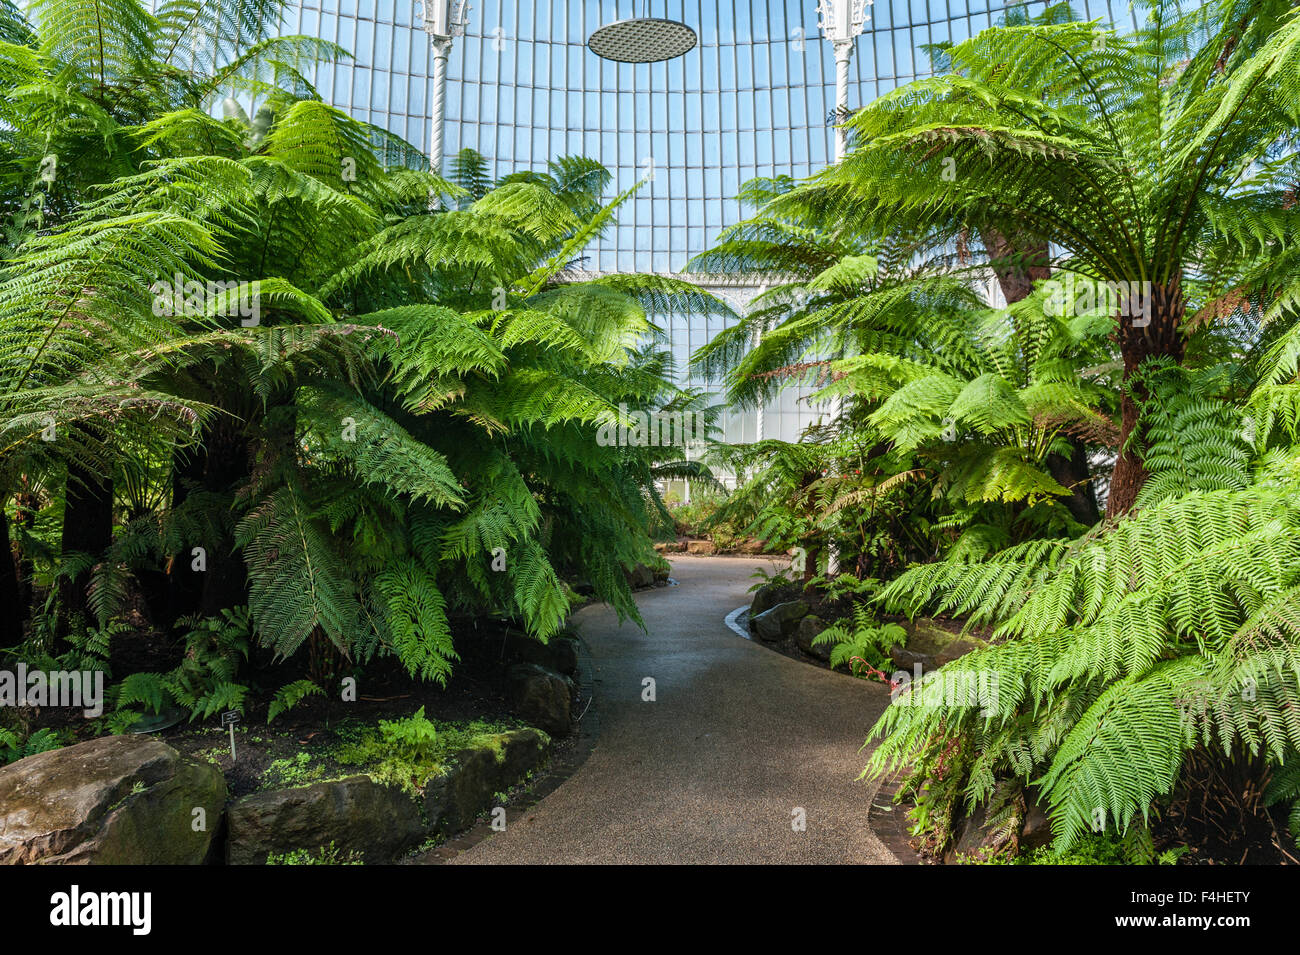 La serre victorienne de la croquette Palace dans le Jardin botanique de Glasgow, Ecosse Banque D'Images